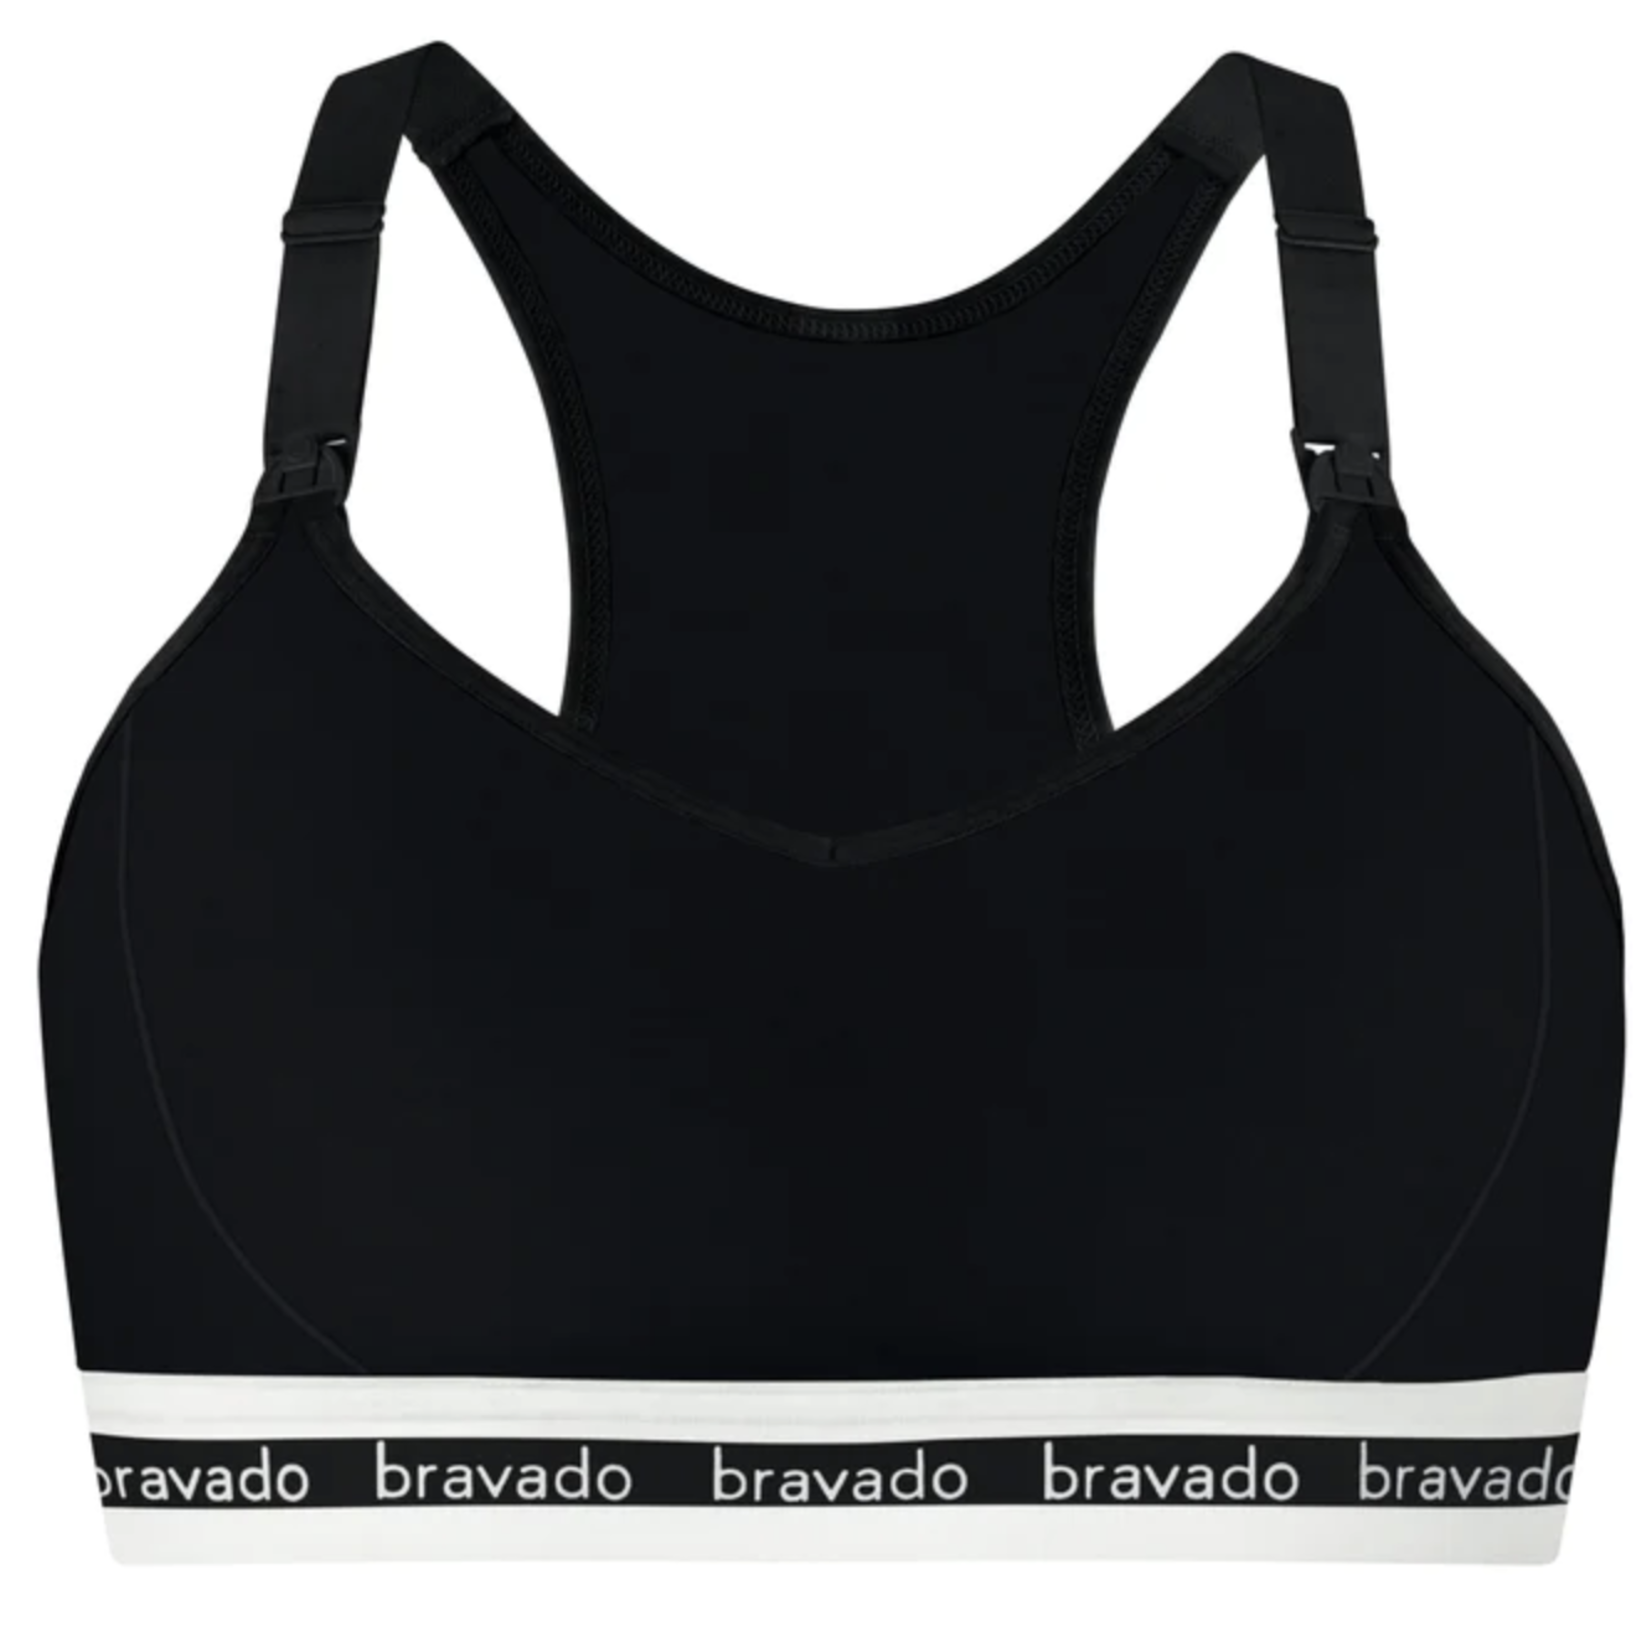 Bravado Designs Original Pumping And Nursing Bra - Sustainable - Black